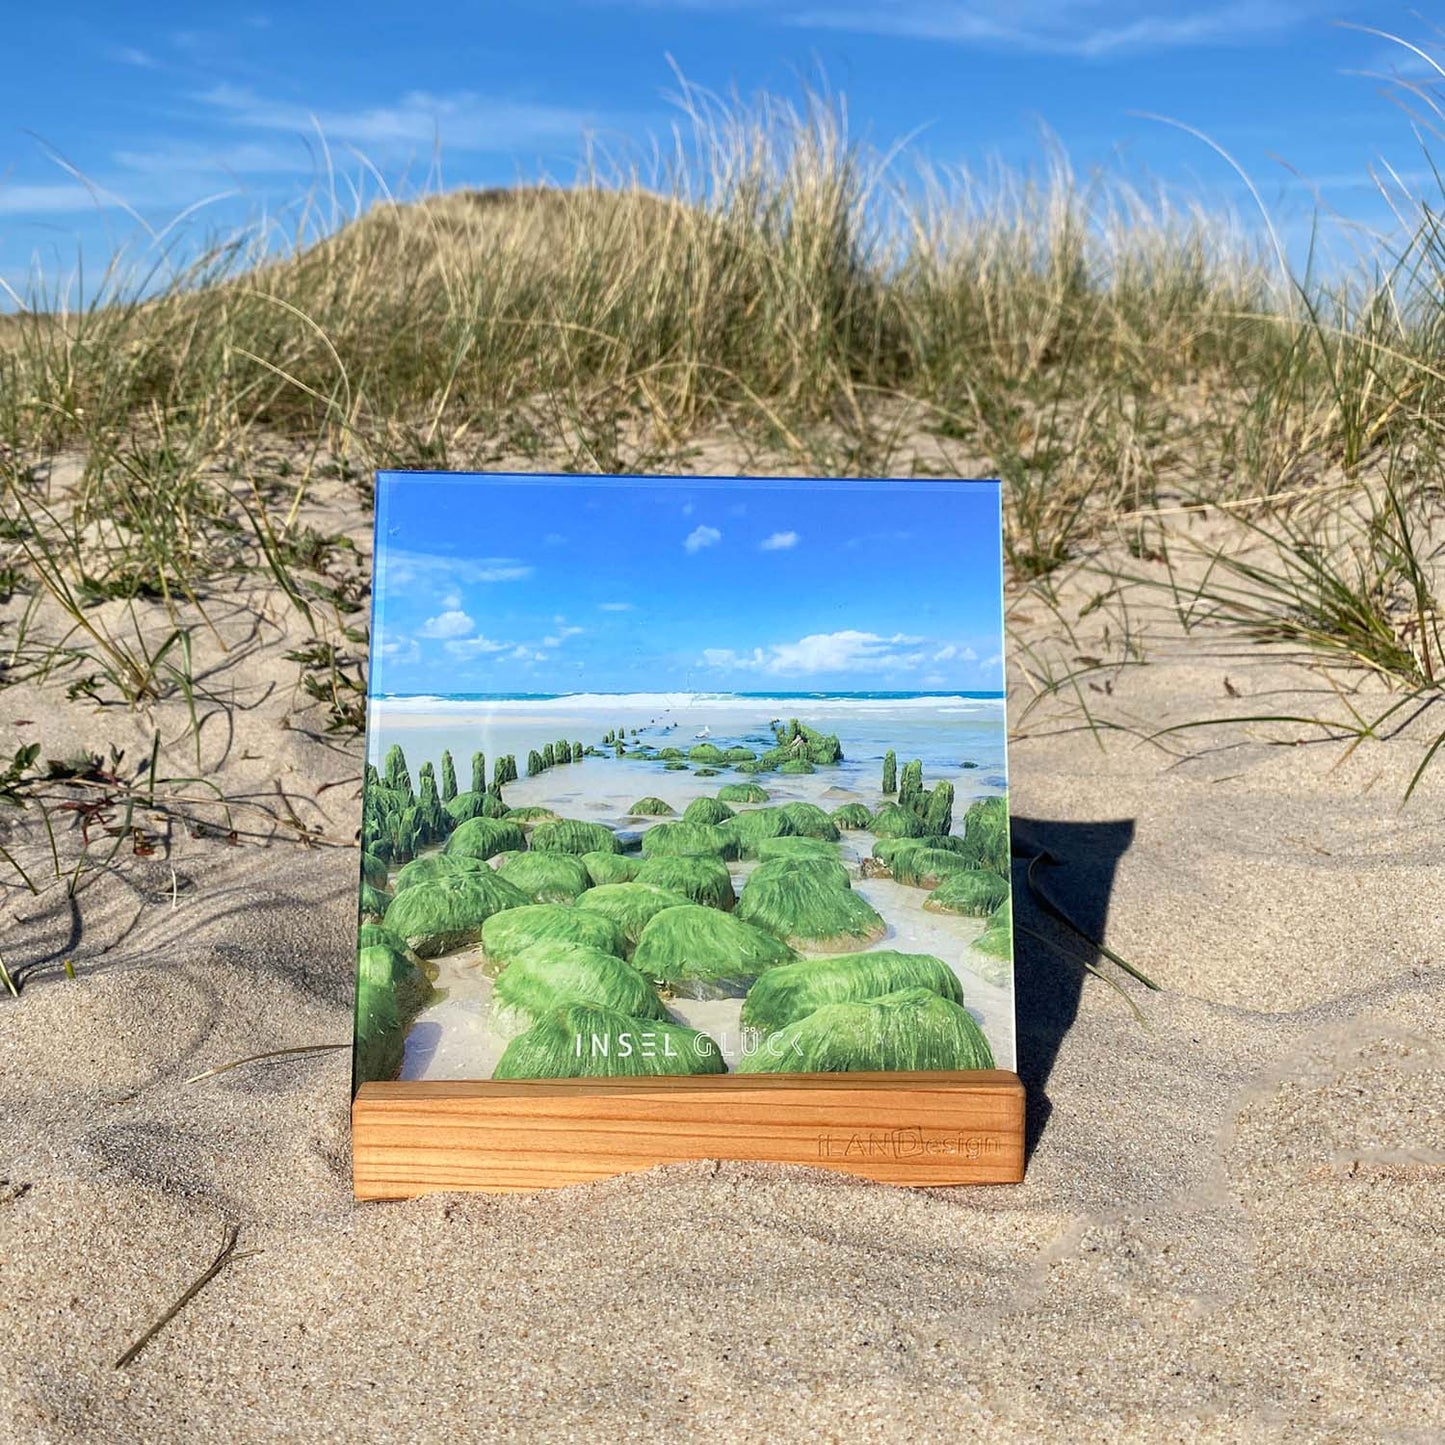 Acrylbild mit vermoosten Buhnenresten in der tosenden Sylter Nordsee steht in einem Holzbilderhalter. Das Set steht in den Sylter Dünen.  